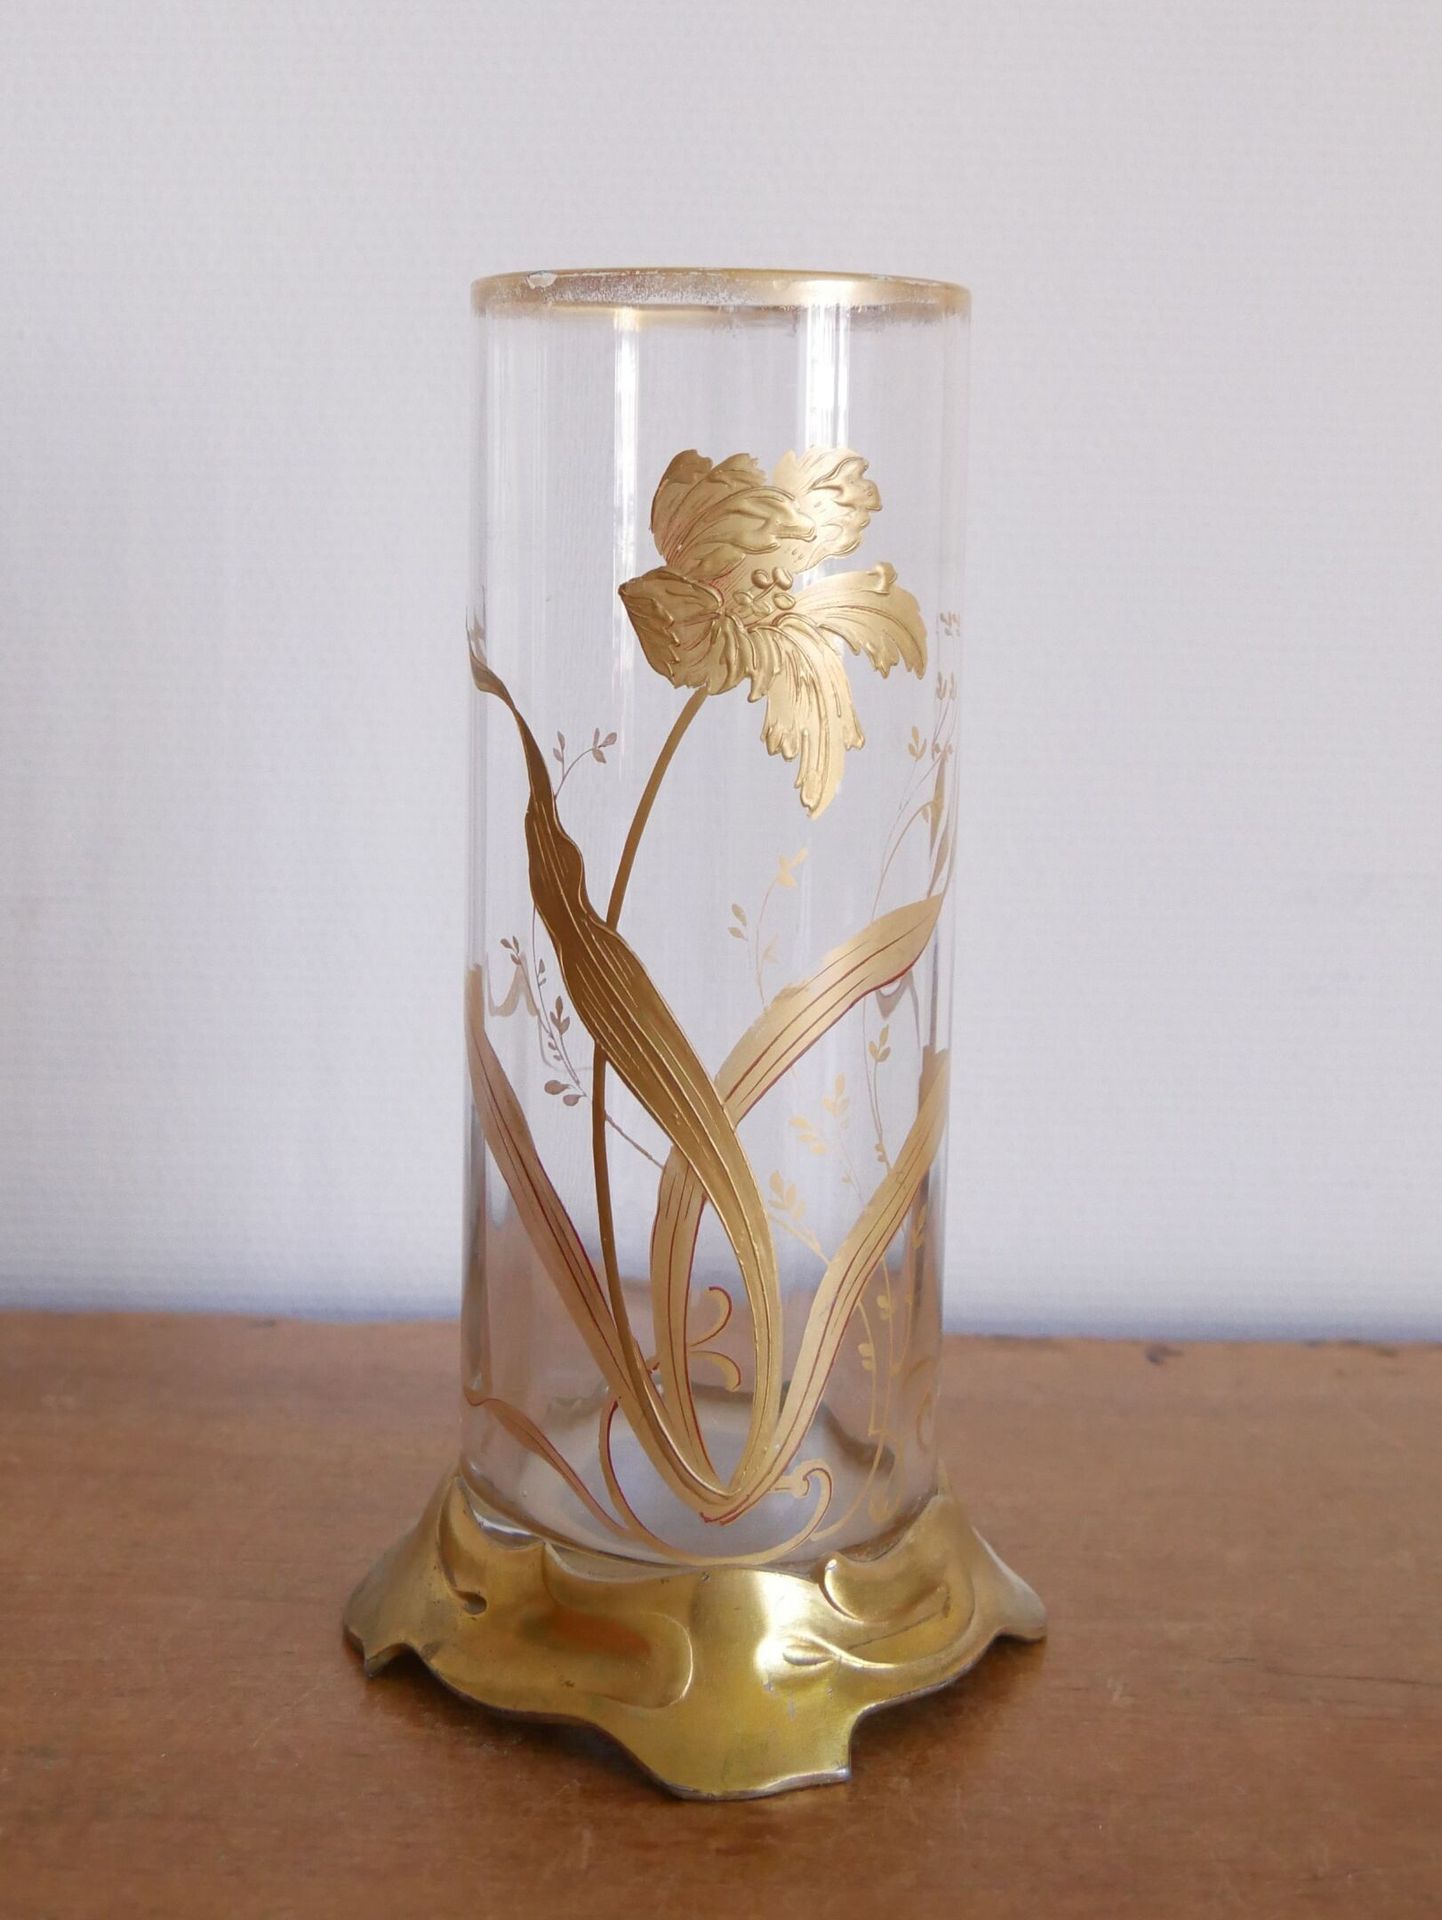 Null 一个圆柱形的花瓶，侧面微微切割，装饰着镀金的花朵和手绘的红色亮点，放在一个镀金的金属底座上，上面装饰着波浪。

高度：22厘米



2021年6月2&hellip;